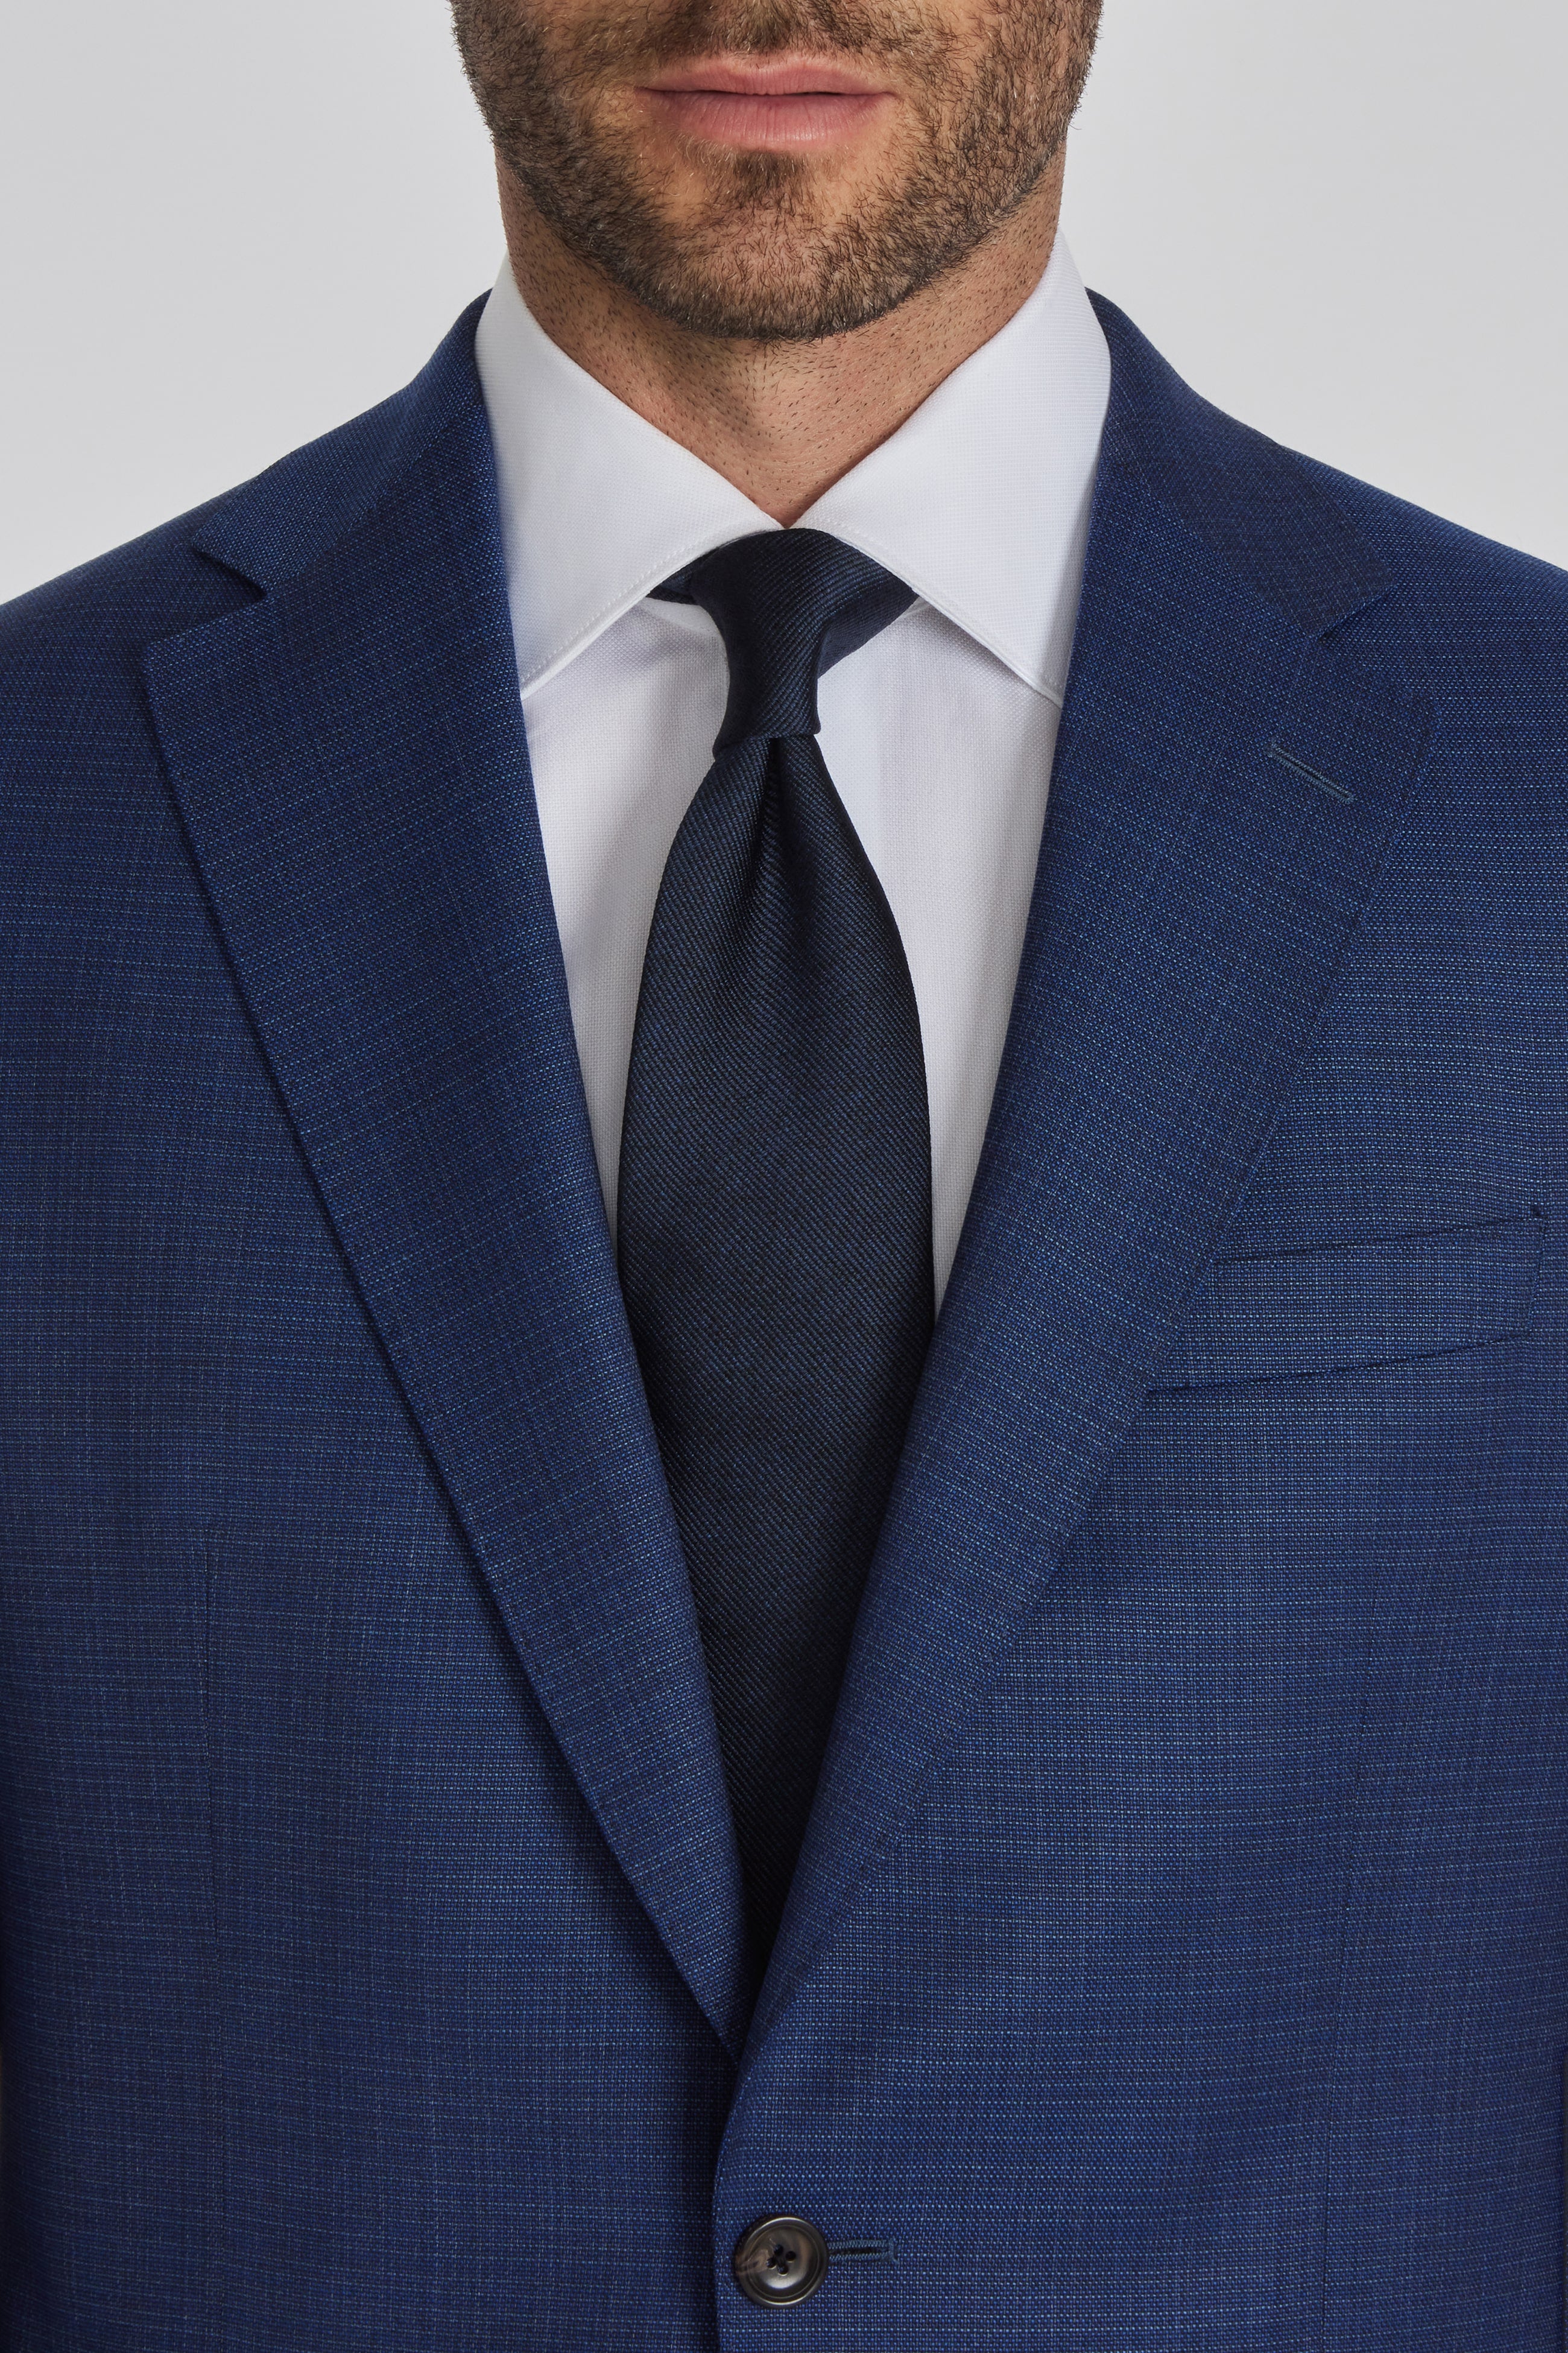 Esprit Blue Neat Super 120's Wool Stretch Suit